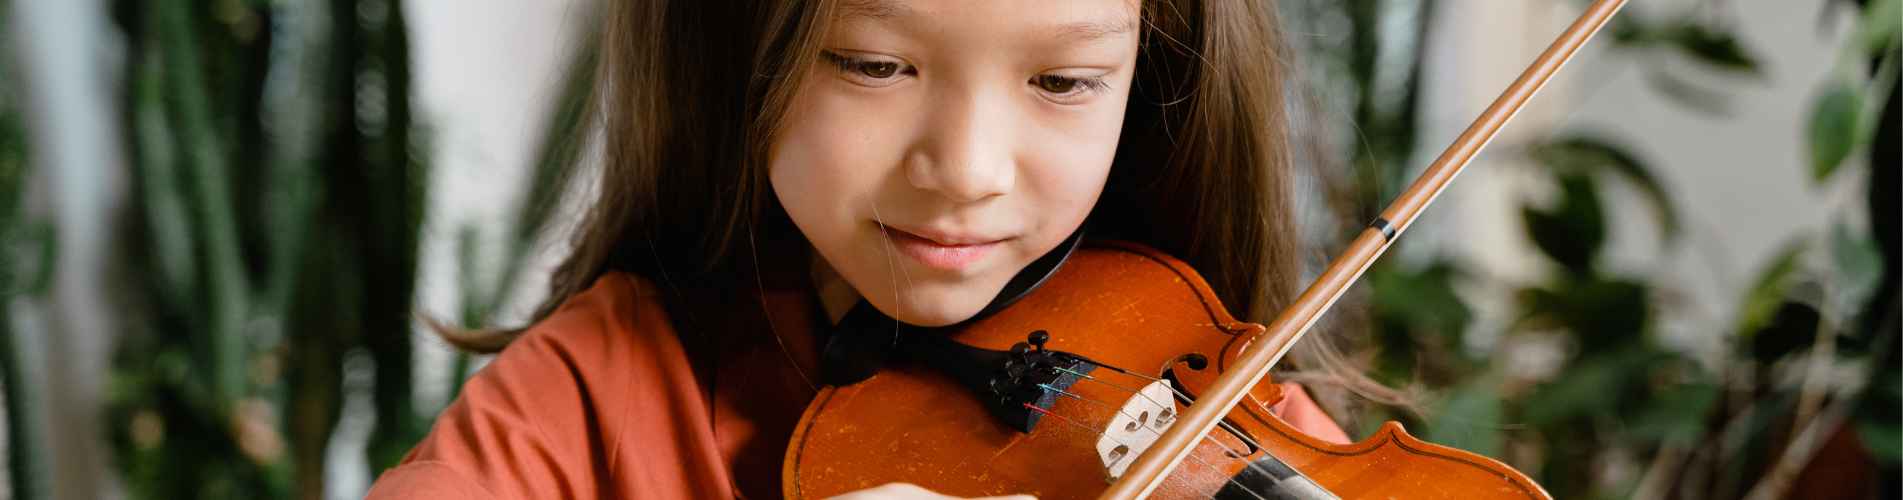 Enfant violon